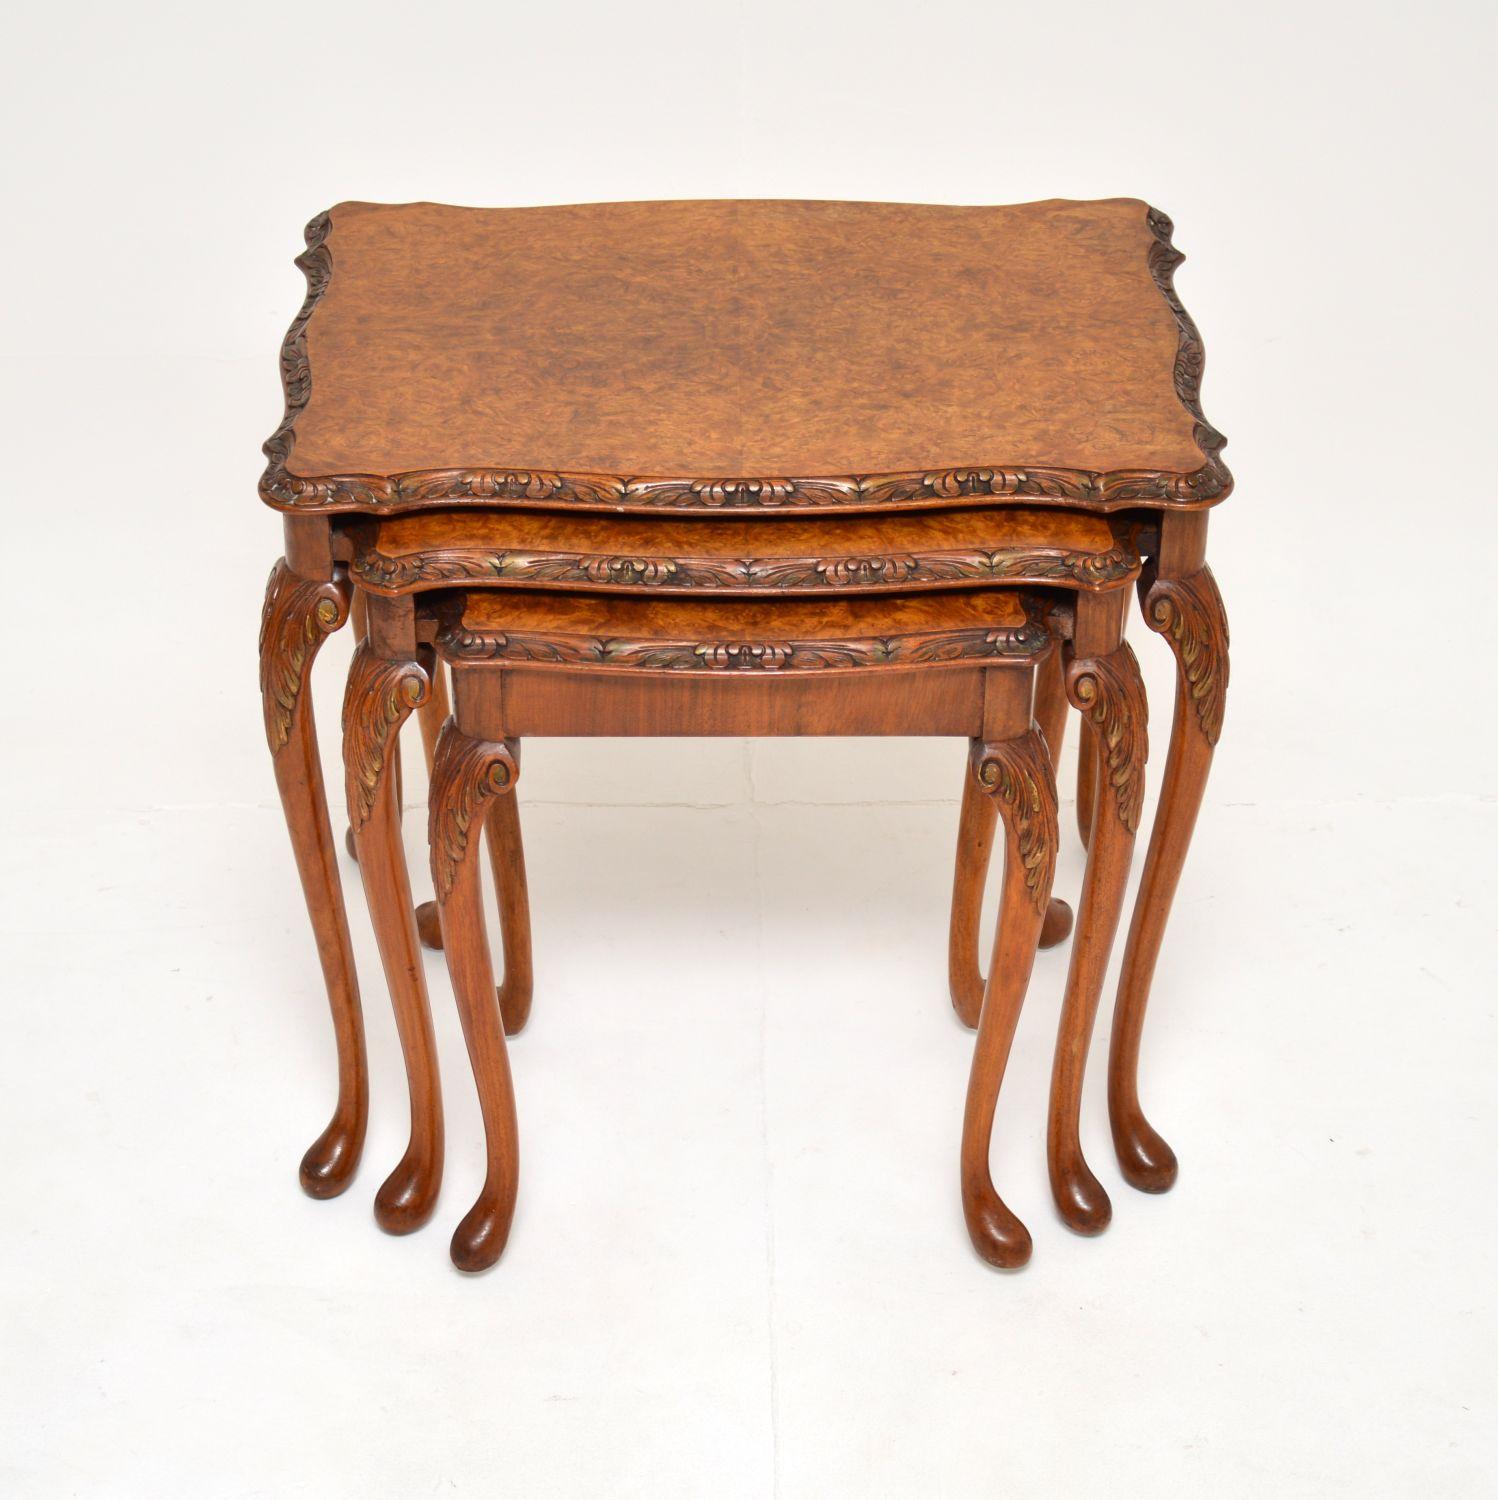 Ein schönes antikes Tischnest aus Wurzelnussholz. Sie sind im Queen-Anne-Stil gehalten und stammen etwa aus den 1930er Jahren.

Die Qualität ist ausgezeichnet, die Oberteile haben schöne serpentinenförmige Kanten mit scharfen Schnitzereien. Sie